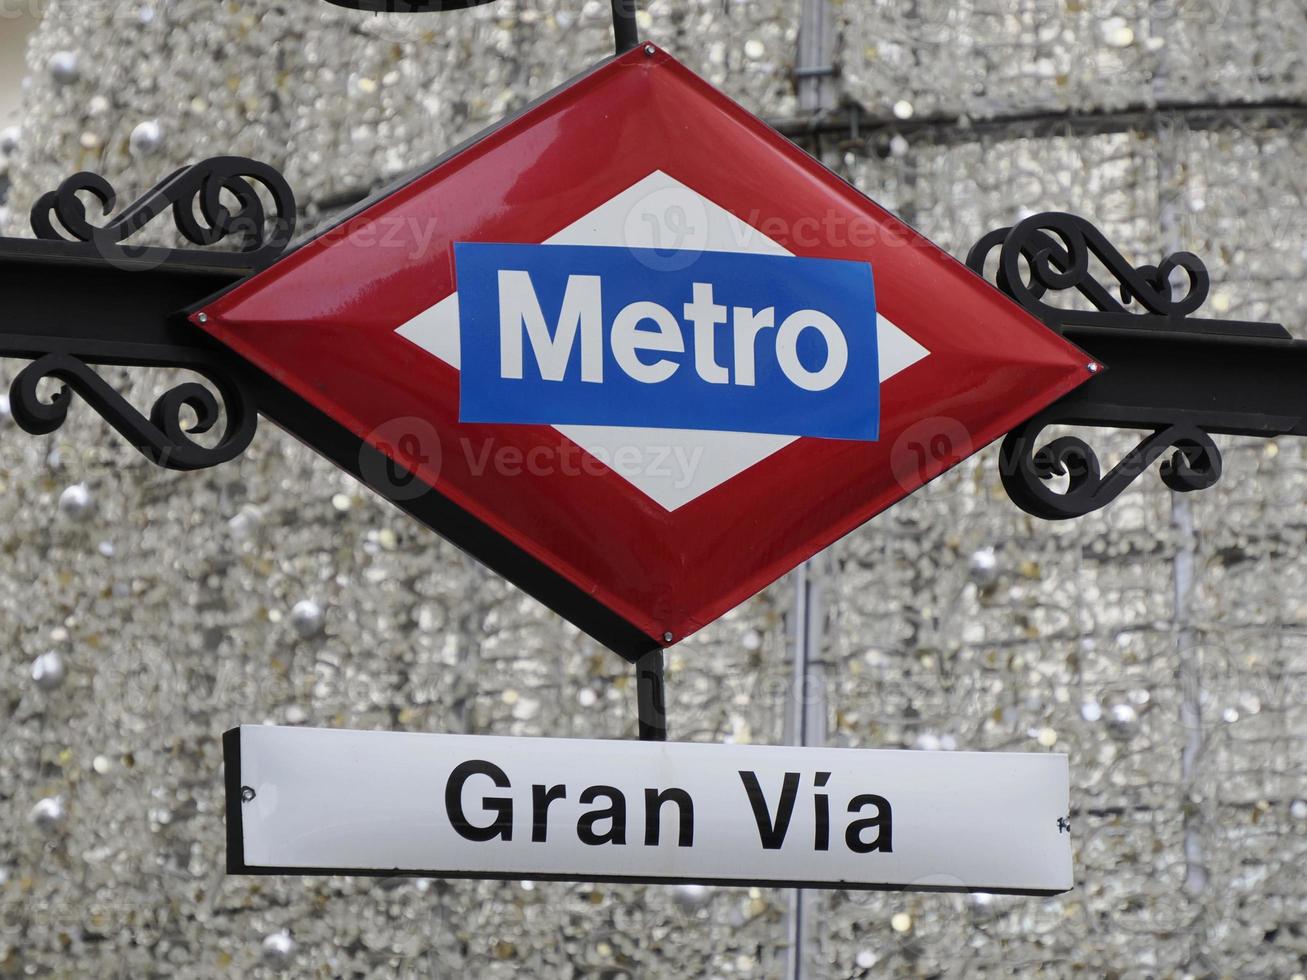 gran via placa de estação de metrô em madrid espanha foto